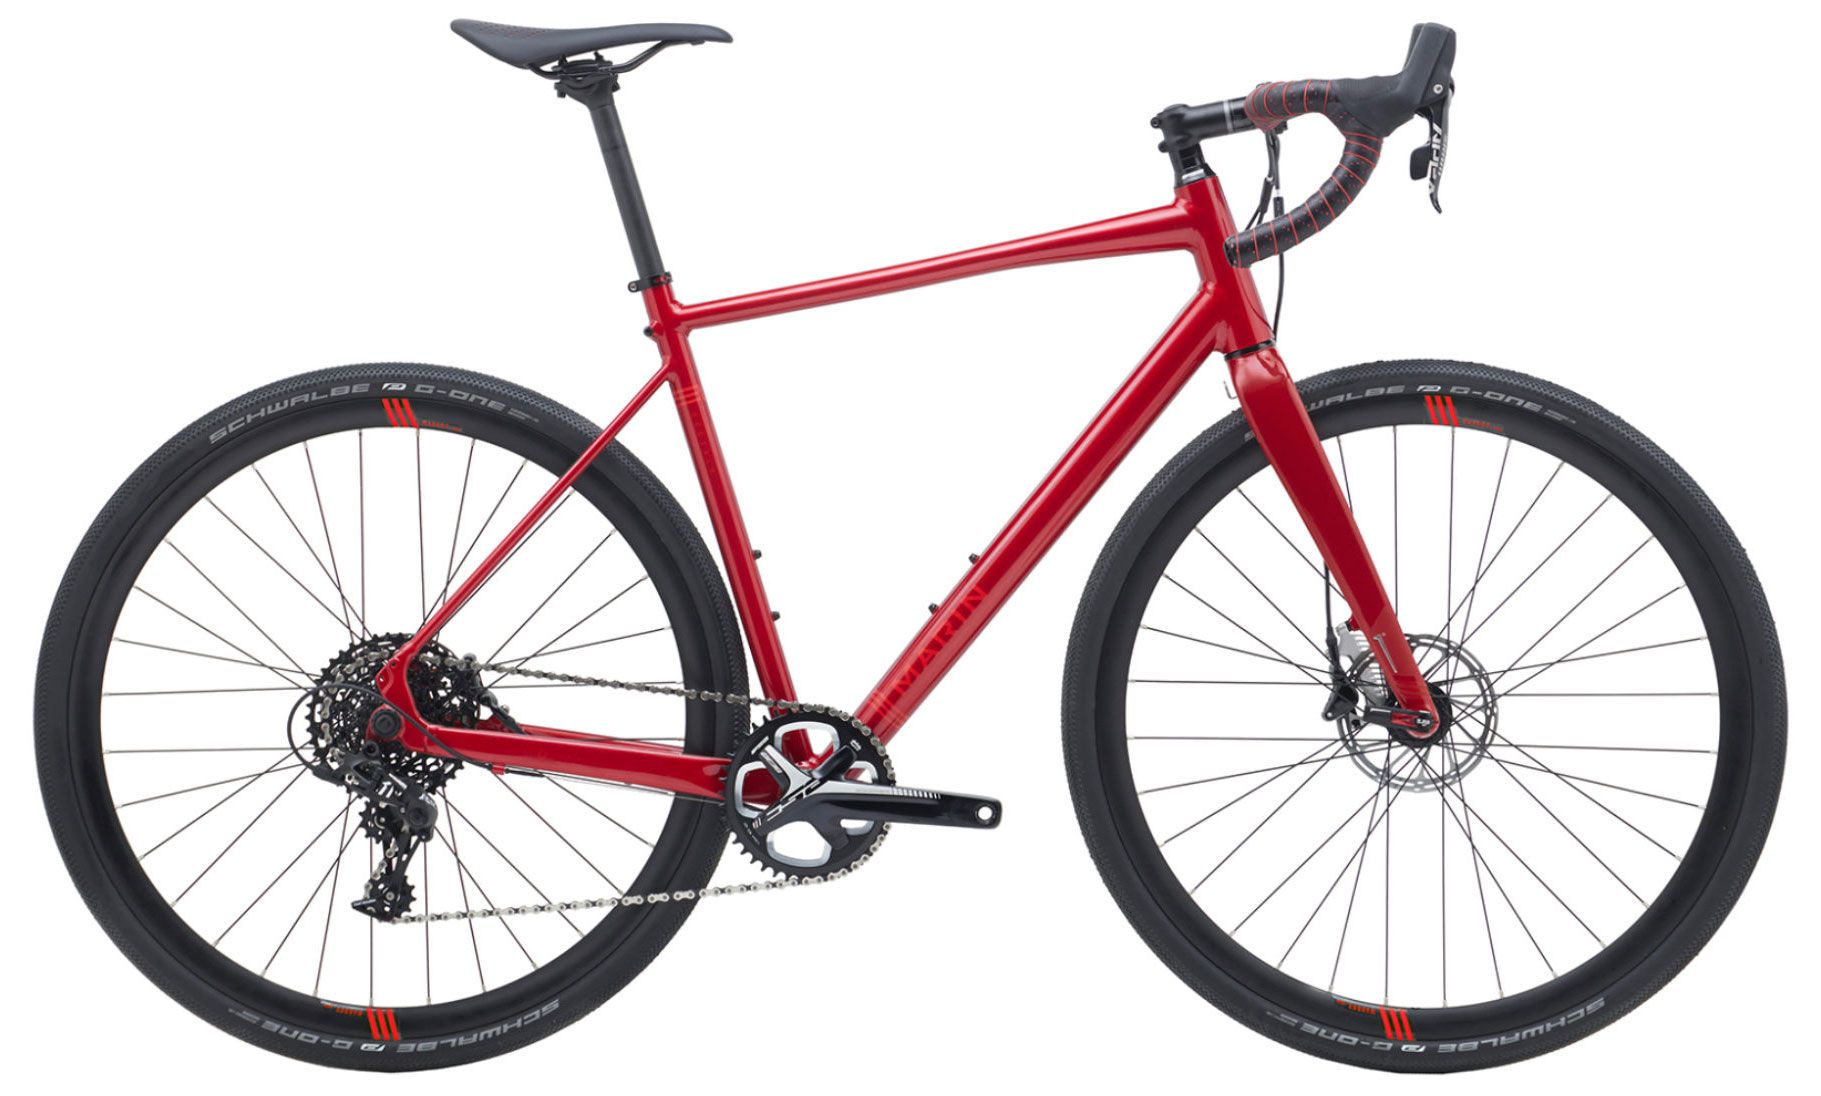  Отзывы о Шоссейном велосипеде Marin Gestalt X11 2018